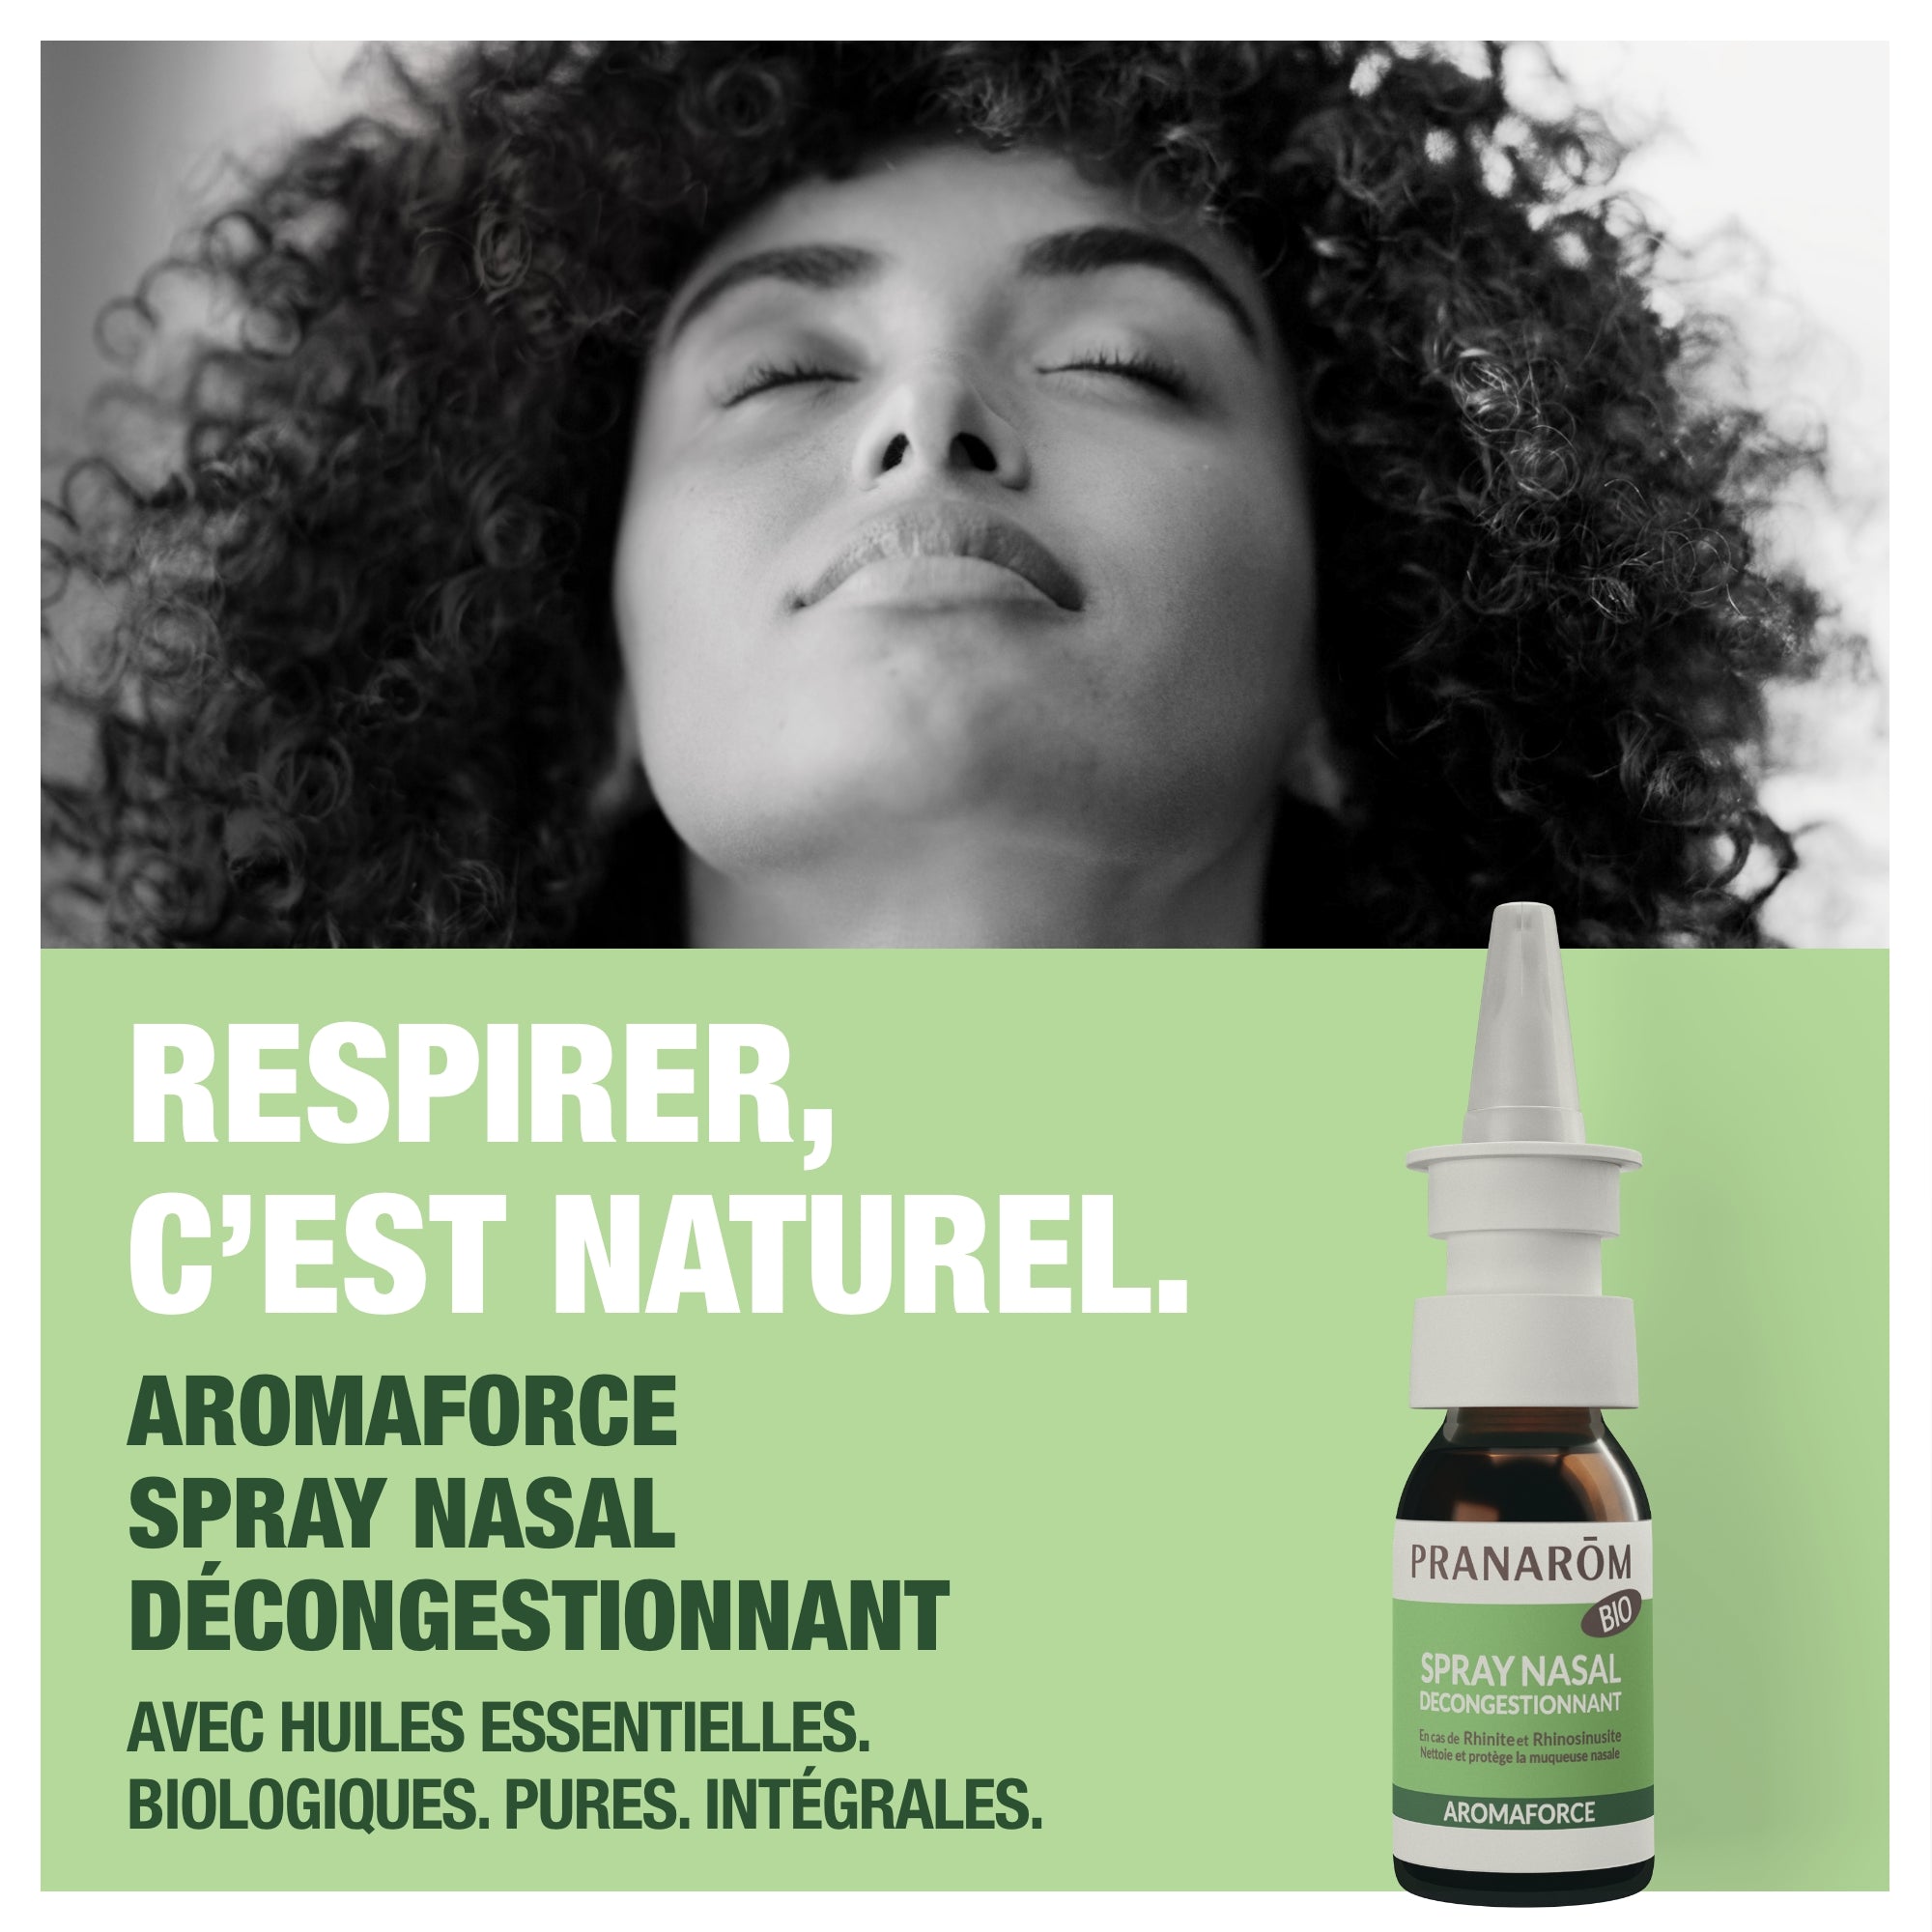 Pranarom Aromaforce Spray Nasal Huile Essentielle Bio 15ml